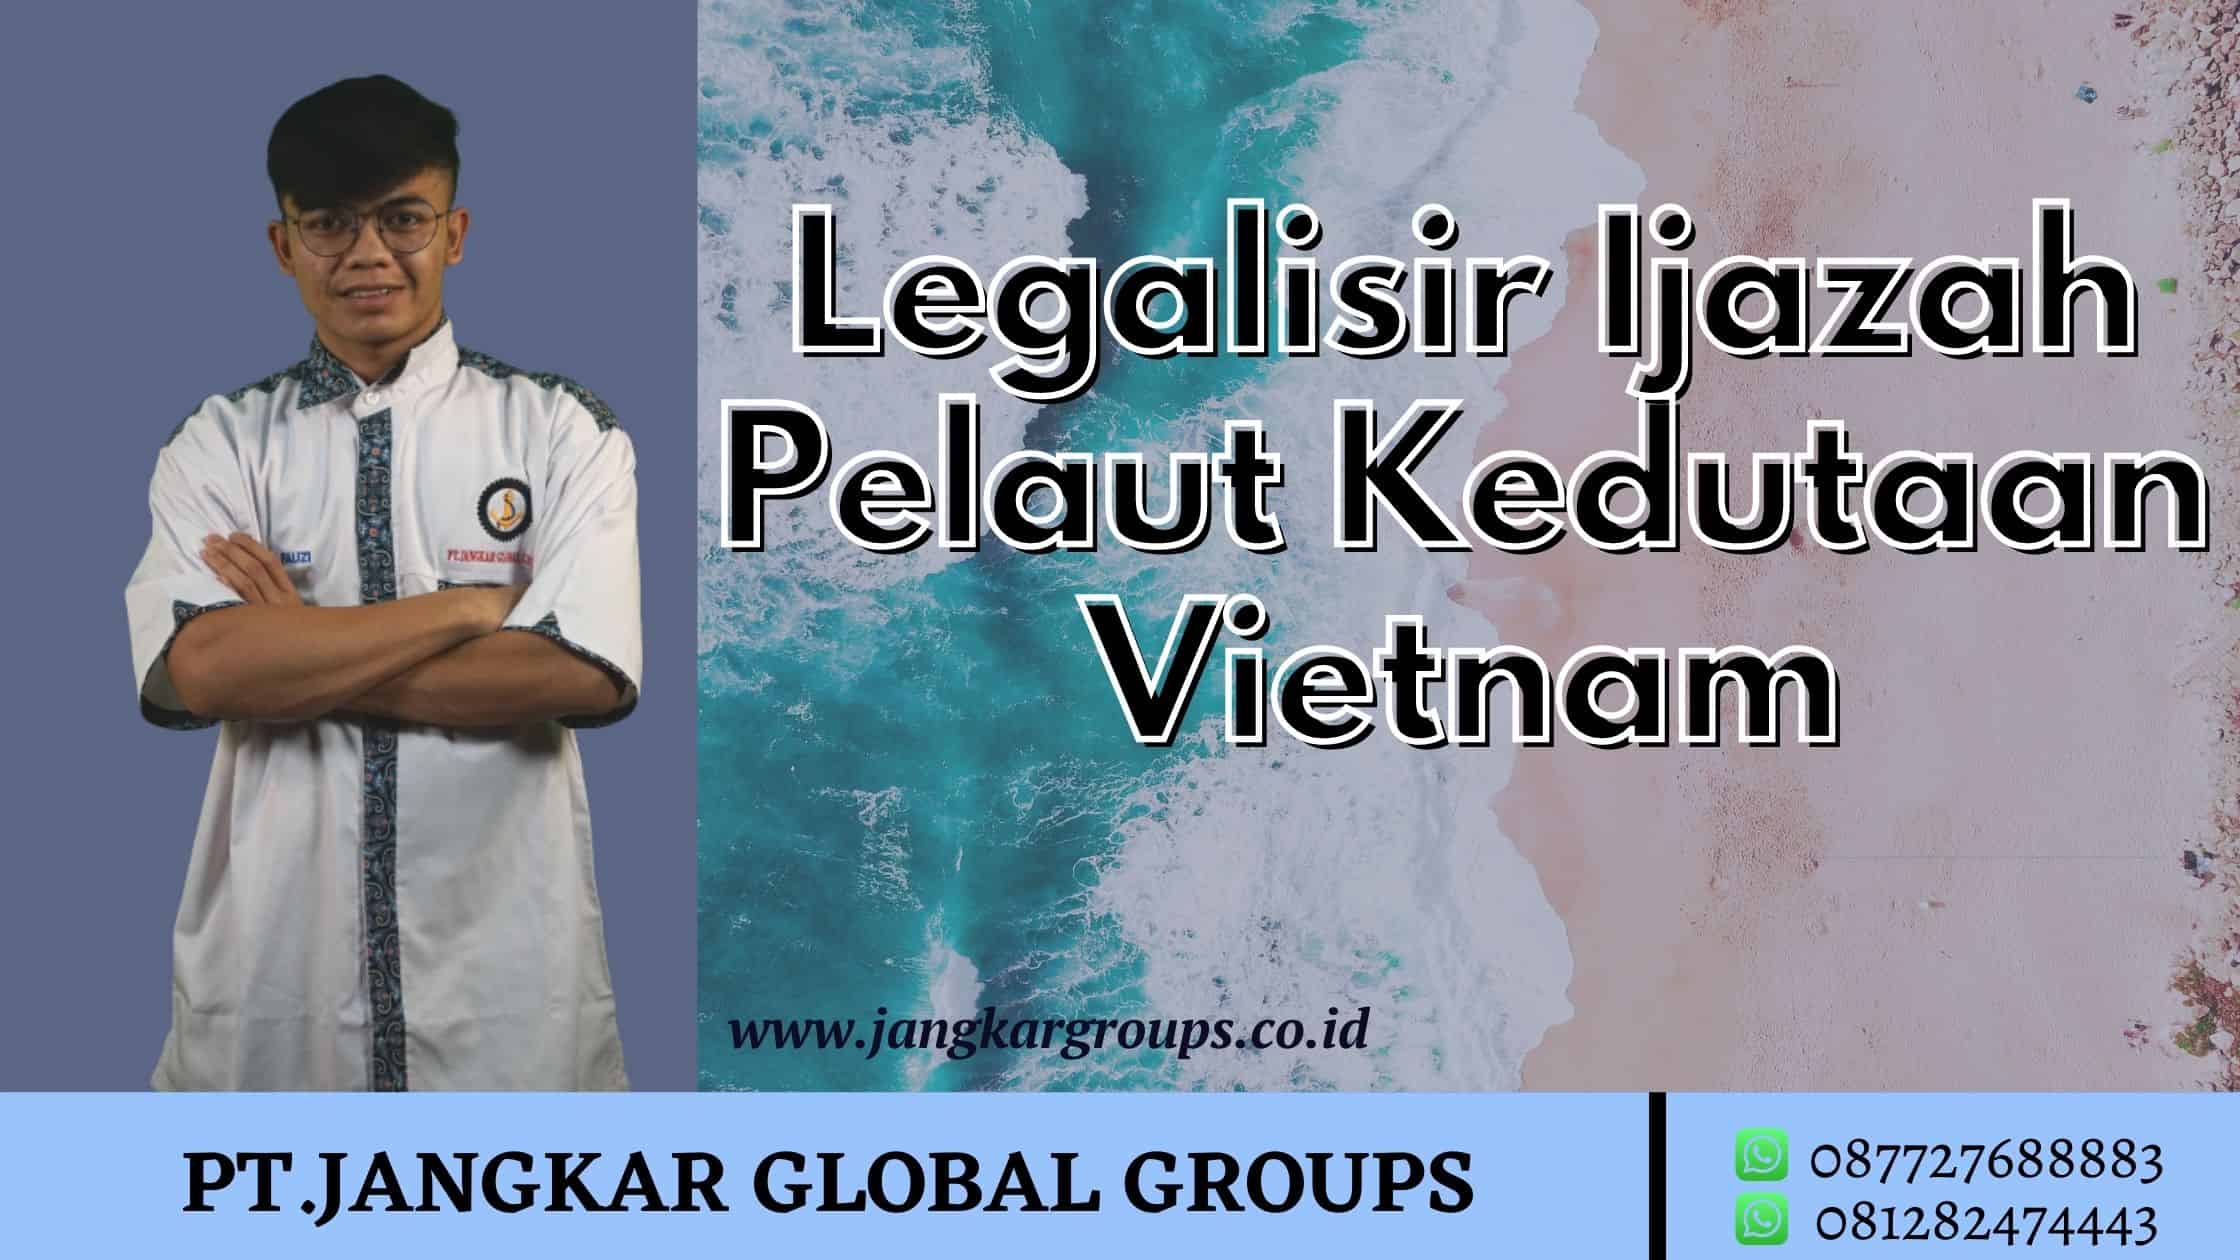 Legalisir ijazah pelaut kedutaan vietnam